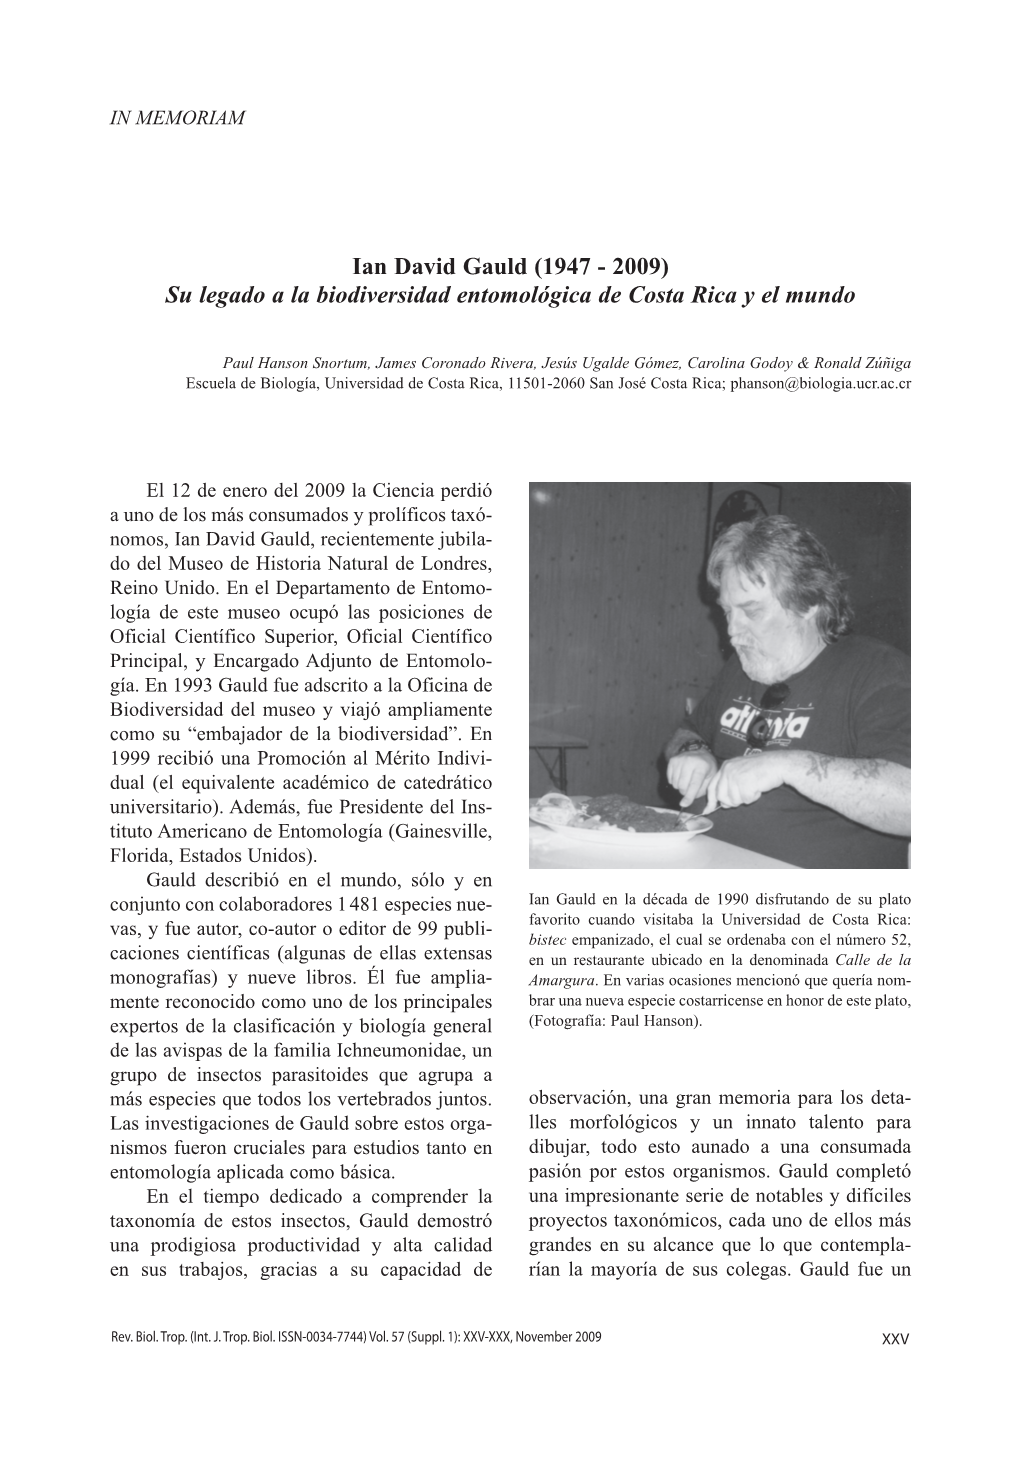 Ian David Gauld (1947 - 2009) Su Legado a La Biodiversidad Entomológica De Costa Rica Y El Mundo